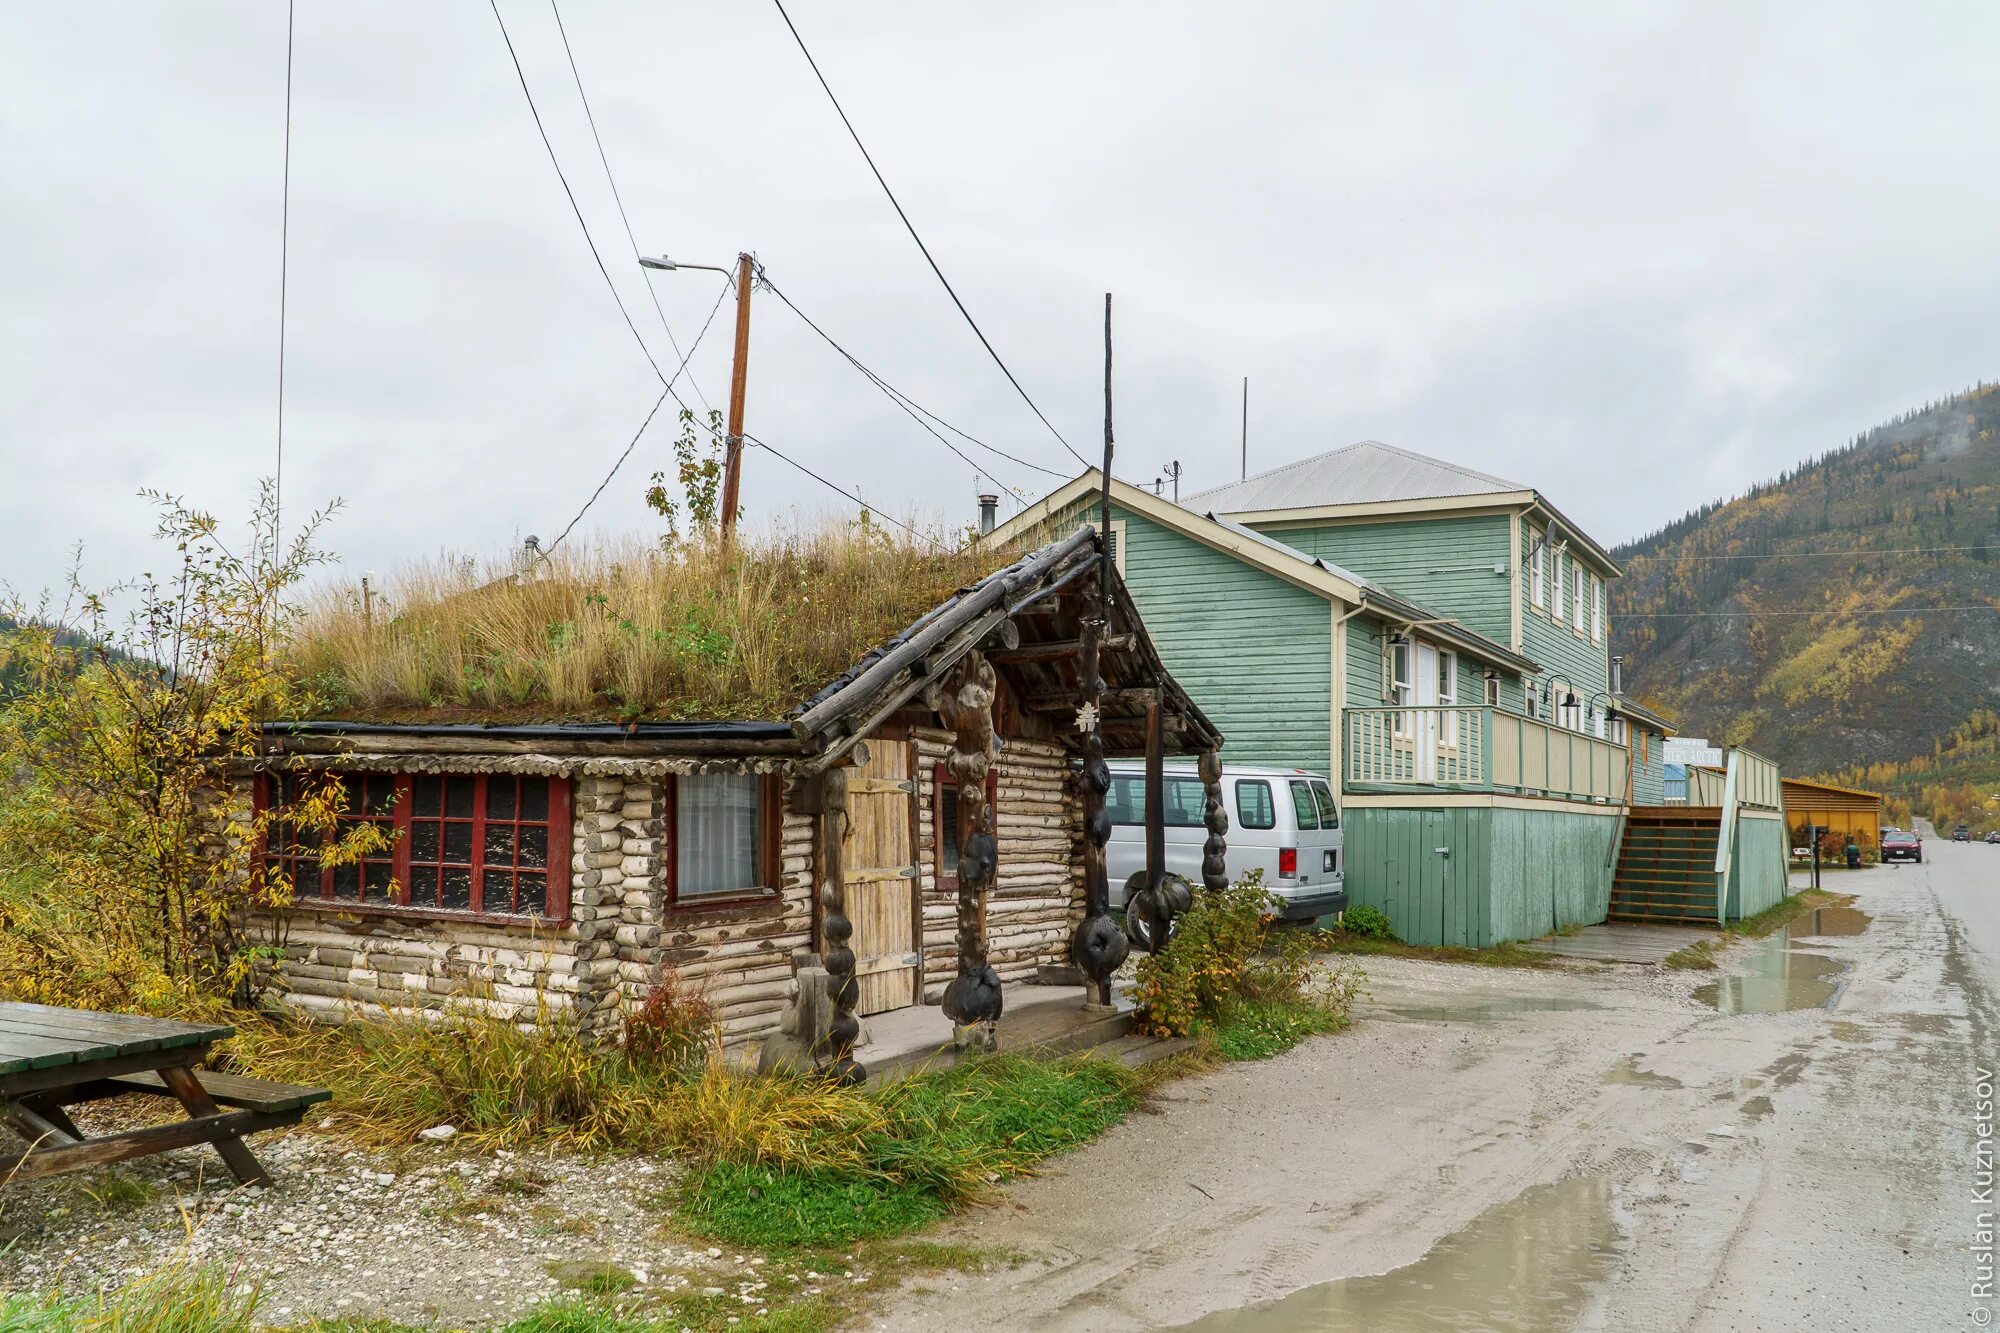 Аляска поселения. Аляска нищета. Заброшенные деревни Аляска. Деревня Нинильчик, штат Аляска. Американская глубинка Аляска.